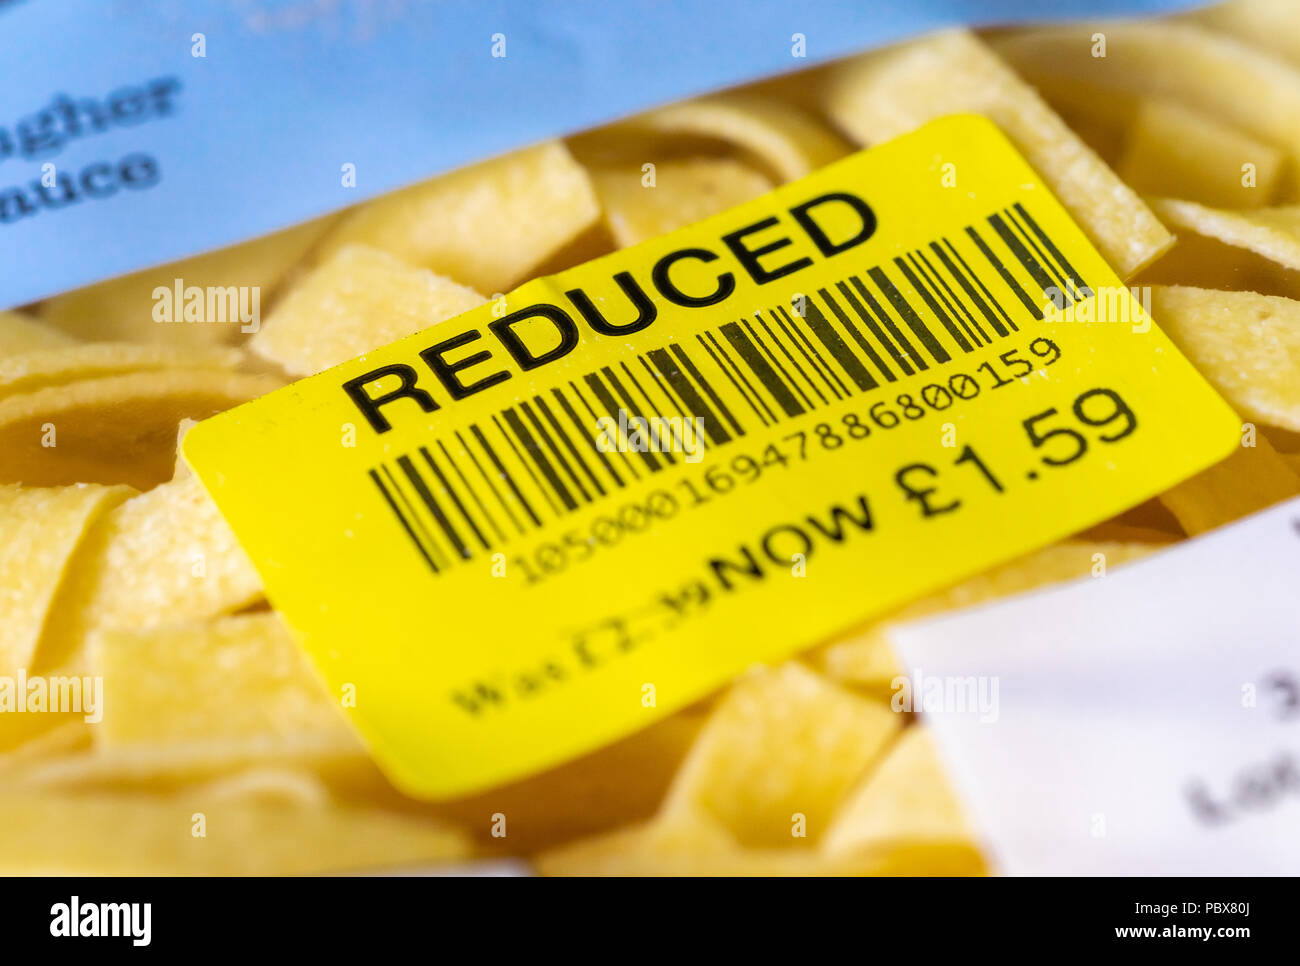 Amarillo Precio REBAJADO etiqueta de comida código de barras encontrado en una bolsa de pasta en un supermercado del Reino Unido Foto de stock